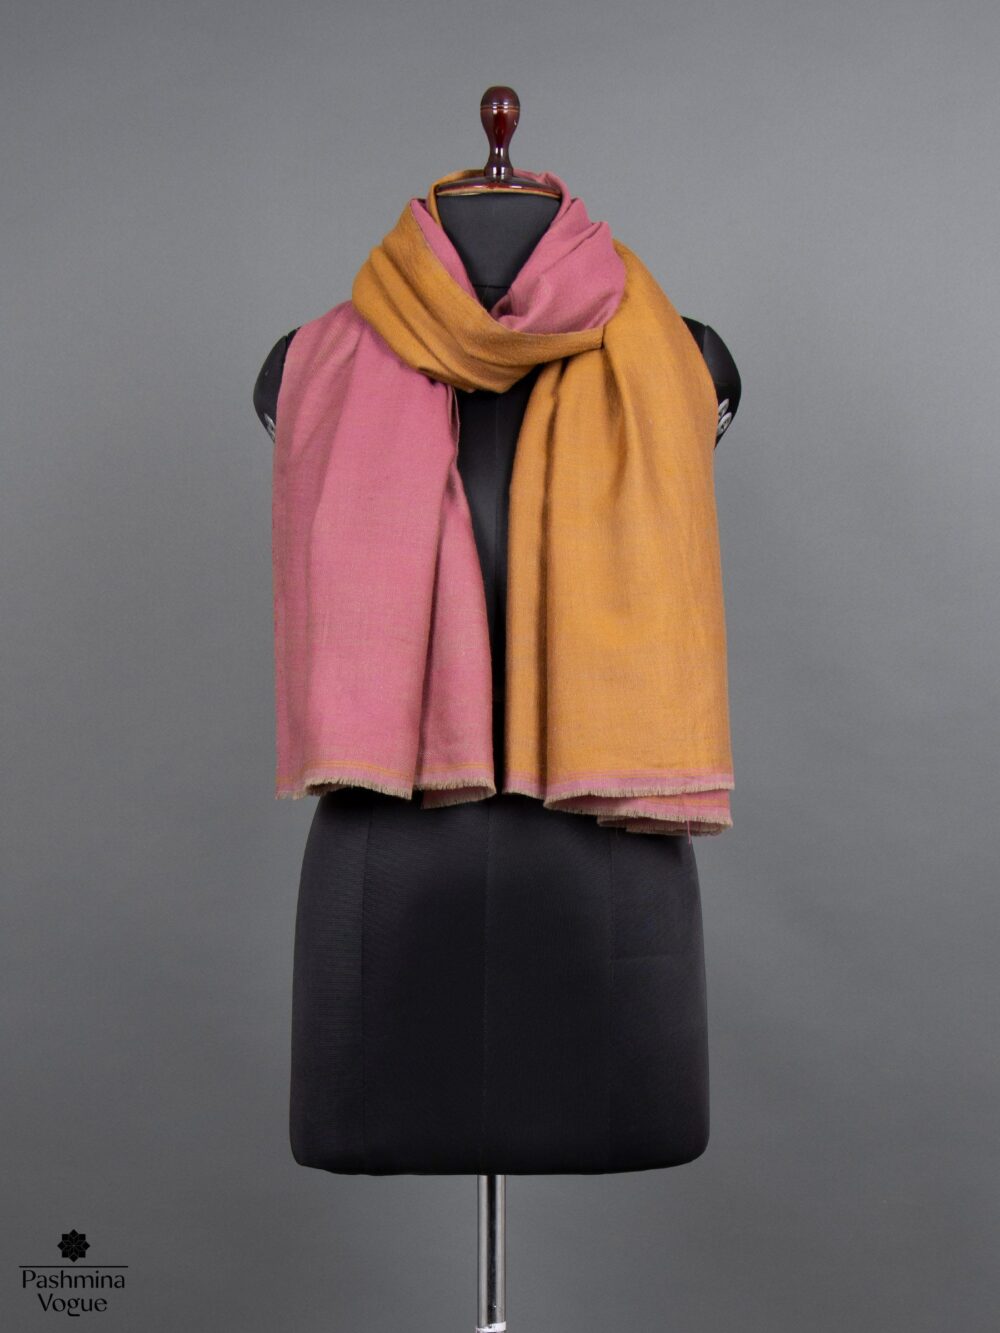 buy-pashmina-shawl-online